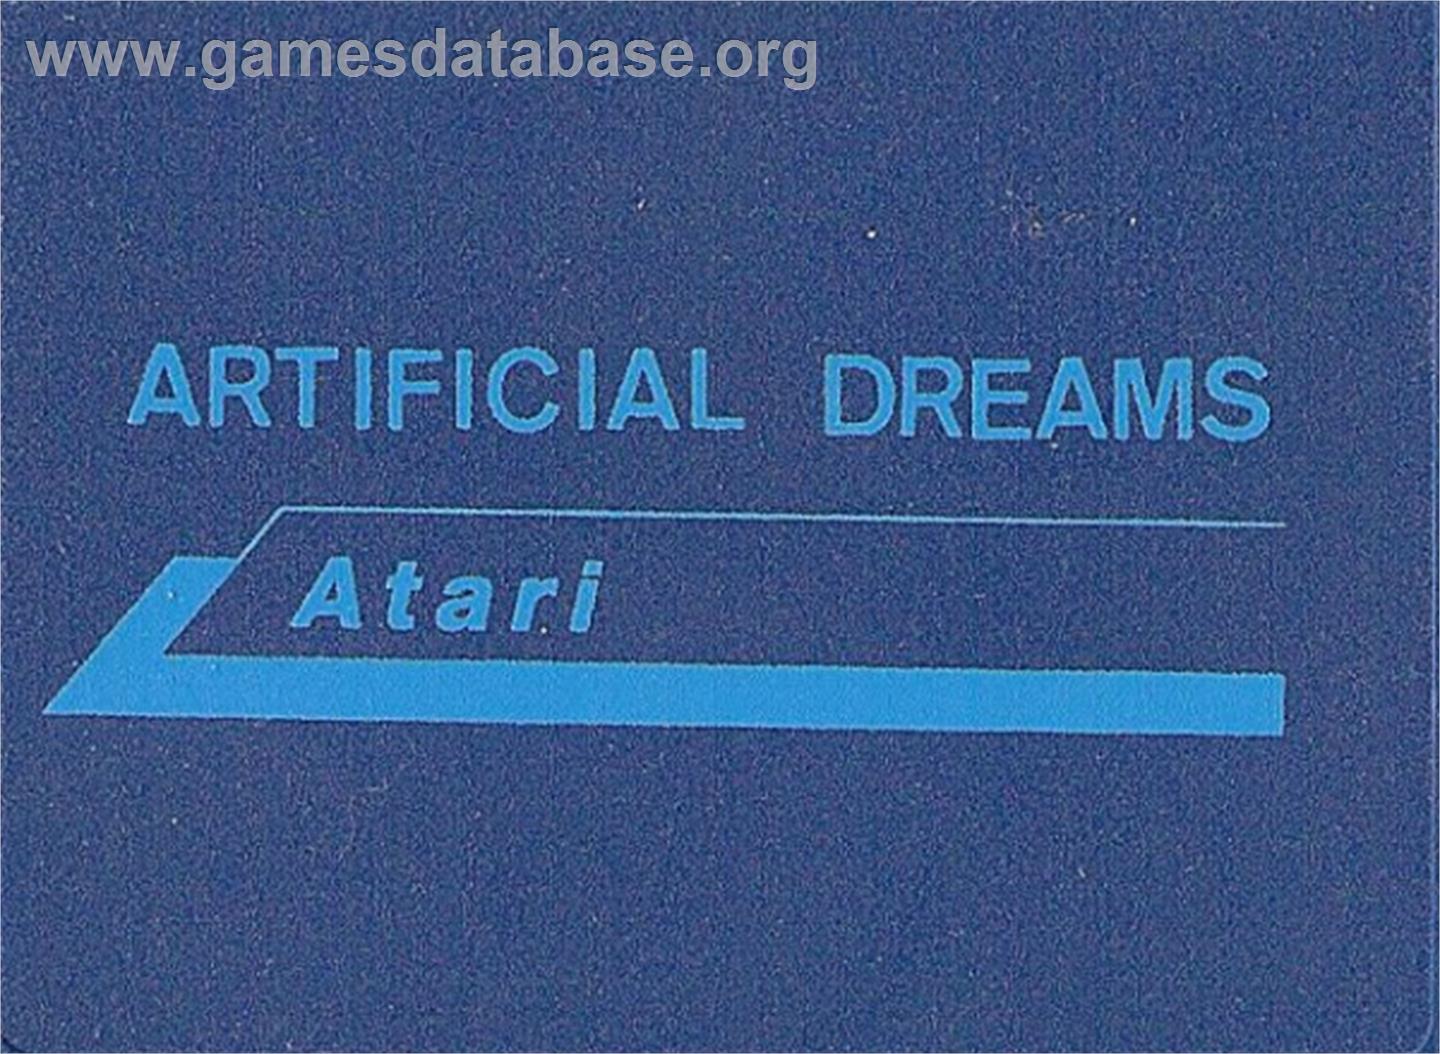 Artificial Dreams - Atari ST - Artwork - Cartridge Top